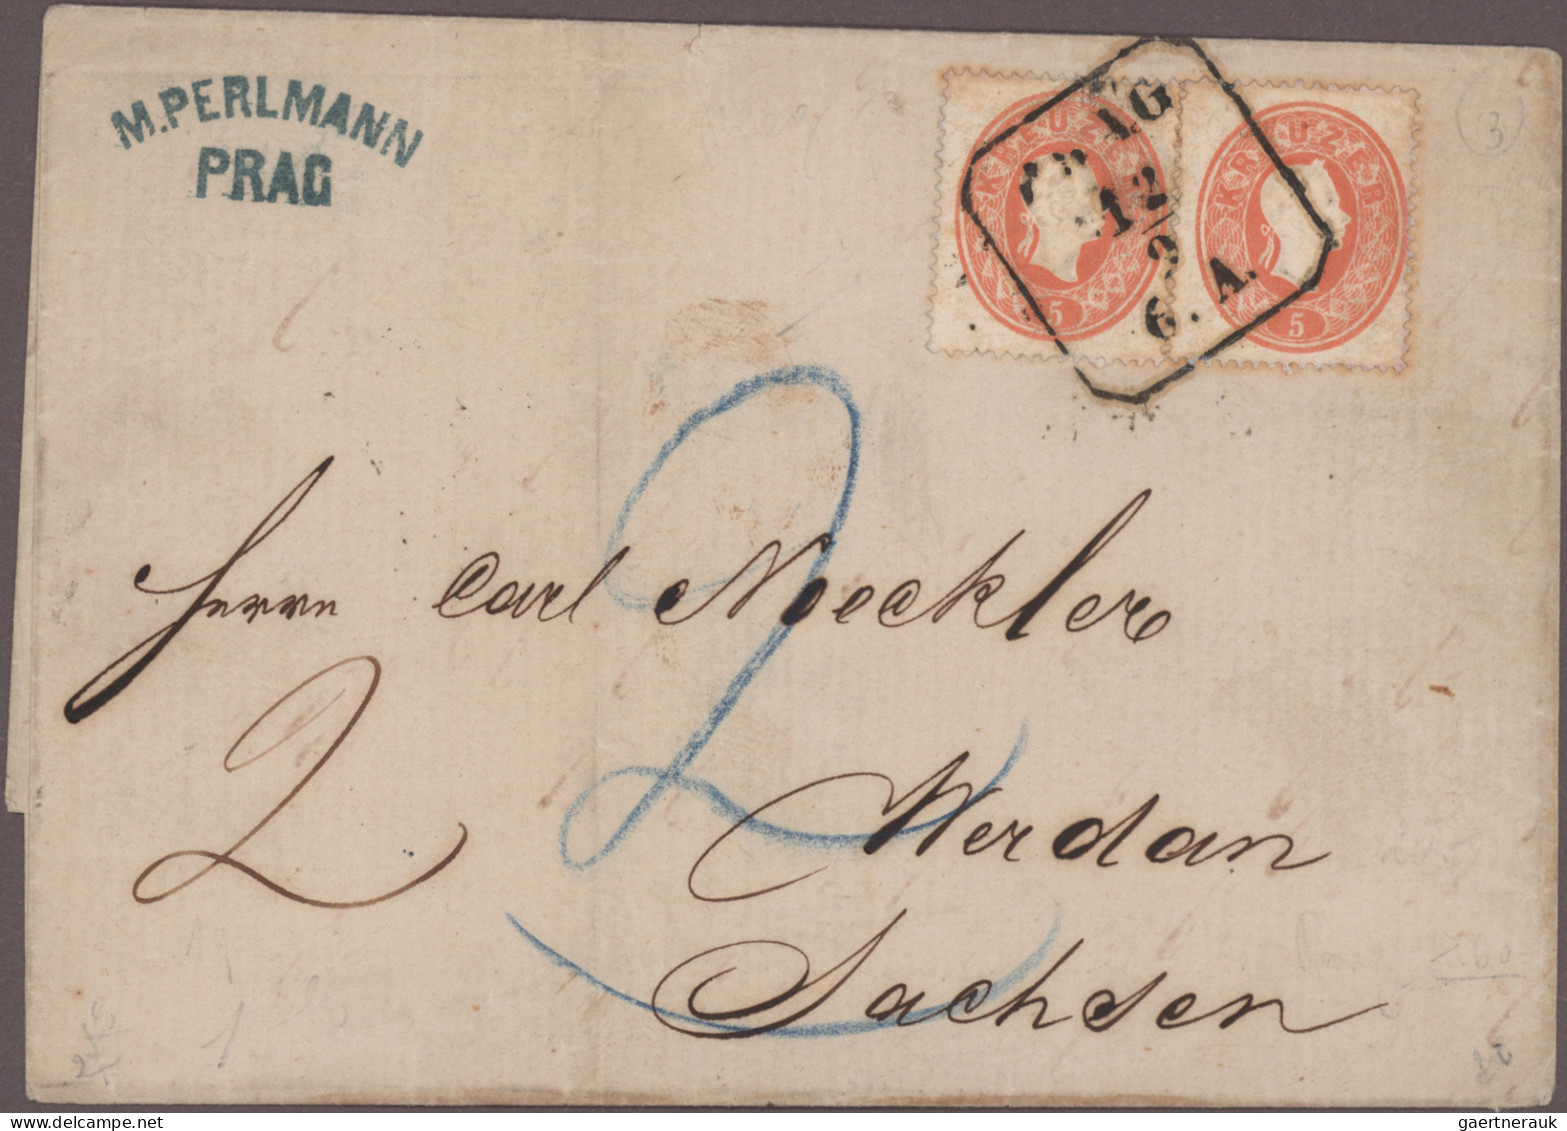 Österreich: 1850/1889, Spezialsammlung von 32 Belegen "Nachtaxierungen", dabei a